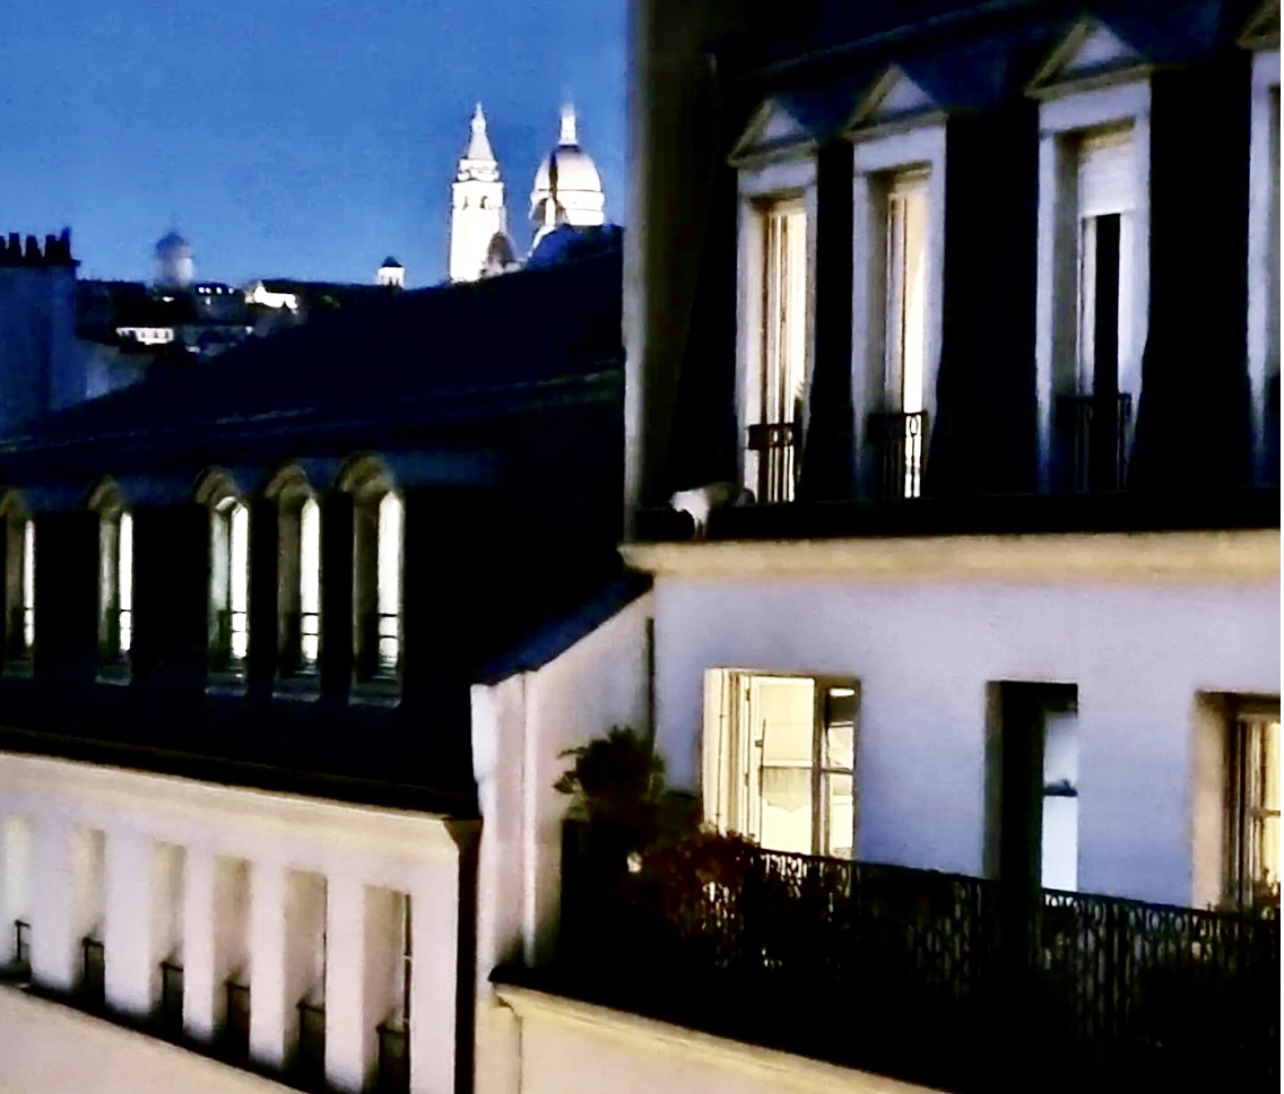 Une vue depuis le balcon d'un immeuble à Paris, révélant l'ambiance politique de la ville.